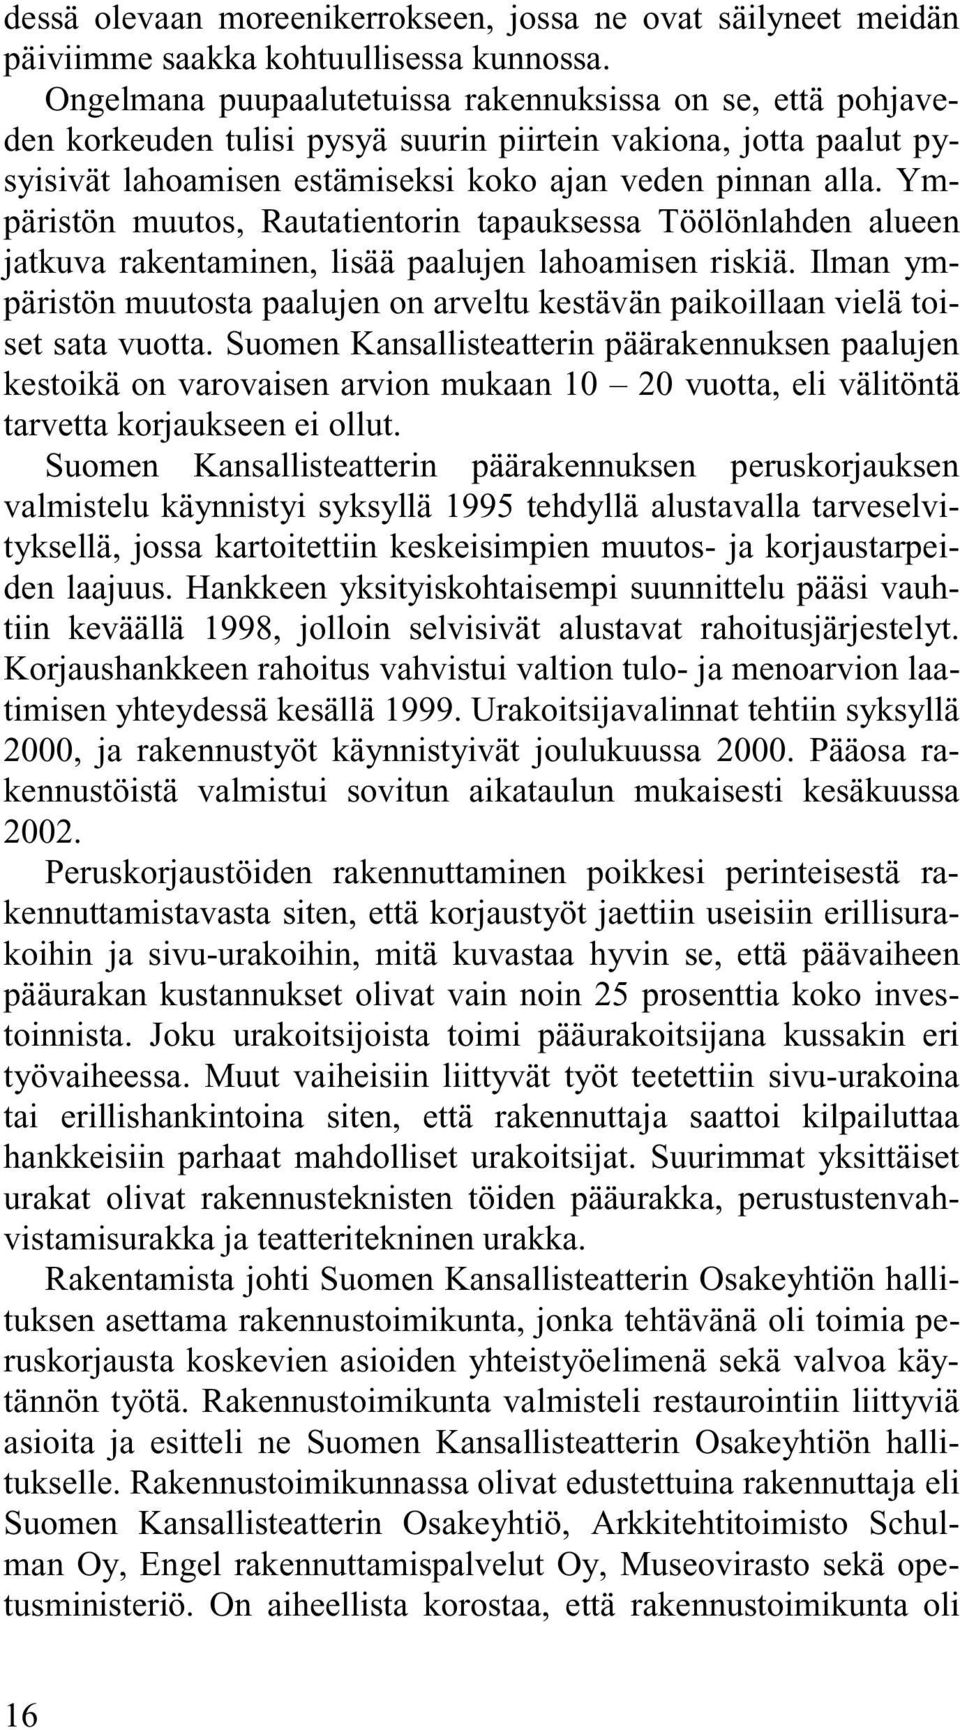 Ympäristön muutos, Rautatientorin tapauksessa Töölönlahden alueen jatkuva rakentaminen, lisää paalujen lahoamisen riskiä.